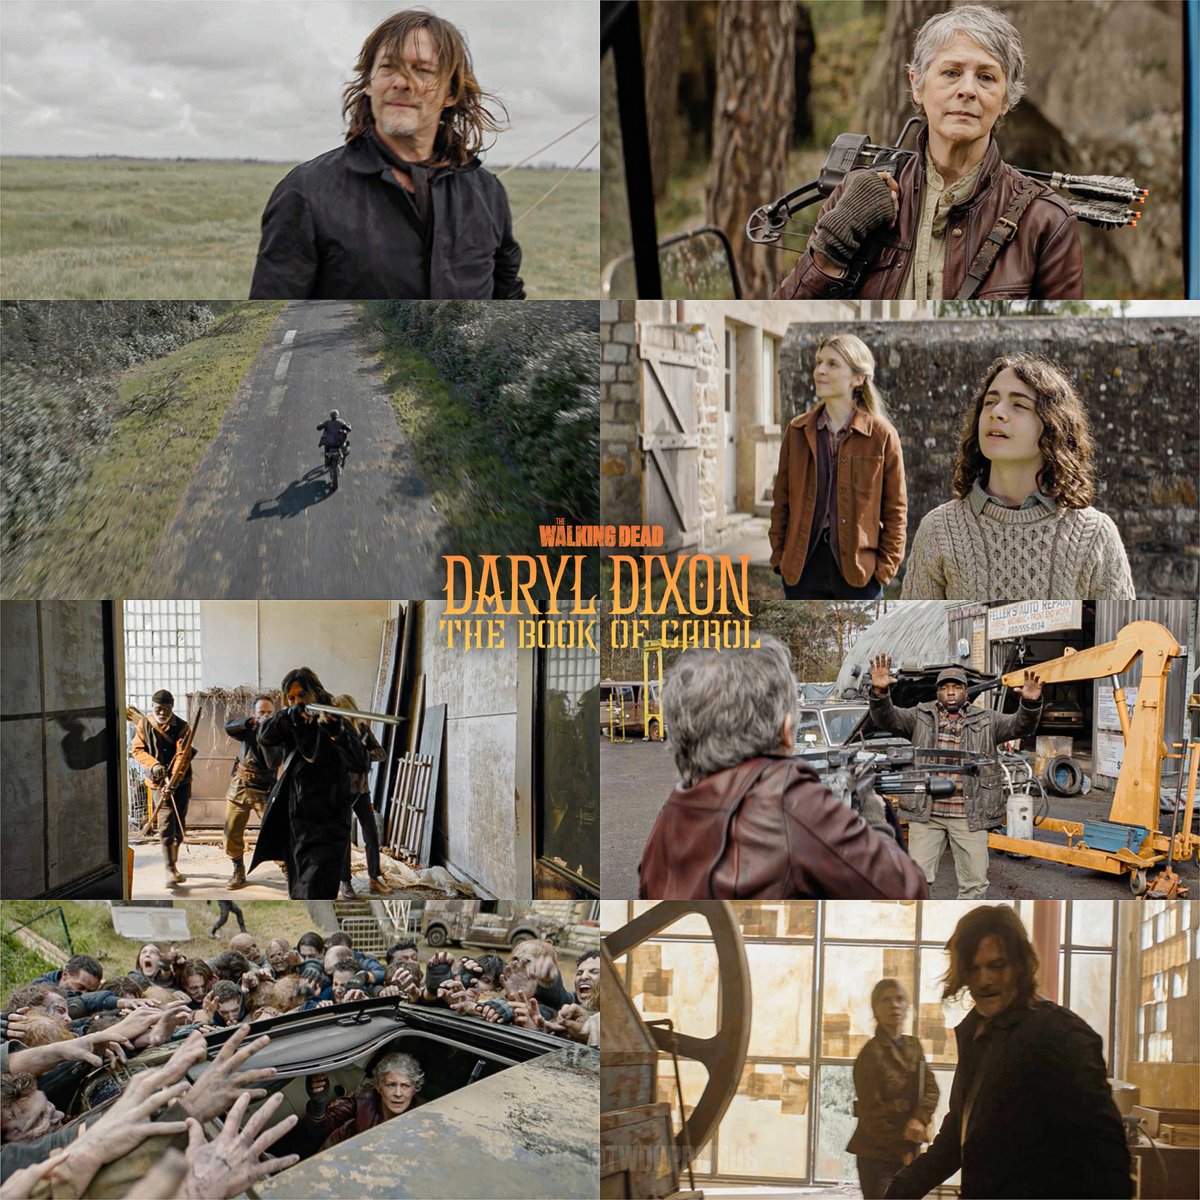 🚨 Le trailer pour 'Daryl Dixon - The Book of Carol' arrive très très bientôt avec sûrement une date à la fin 👀🔥

#TWDDarylDixon #TheWalkingDead